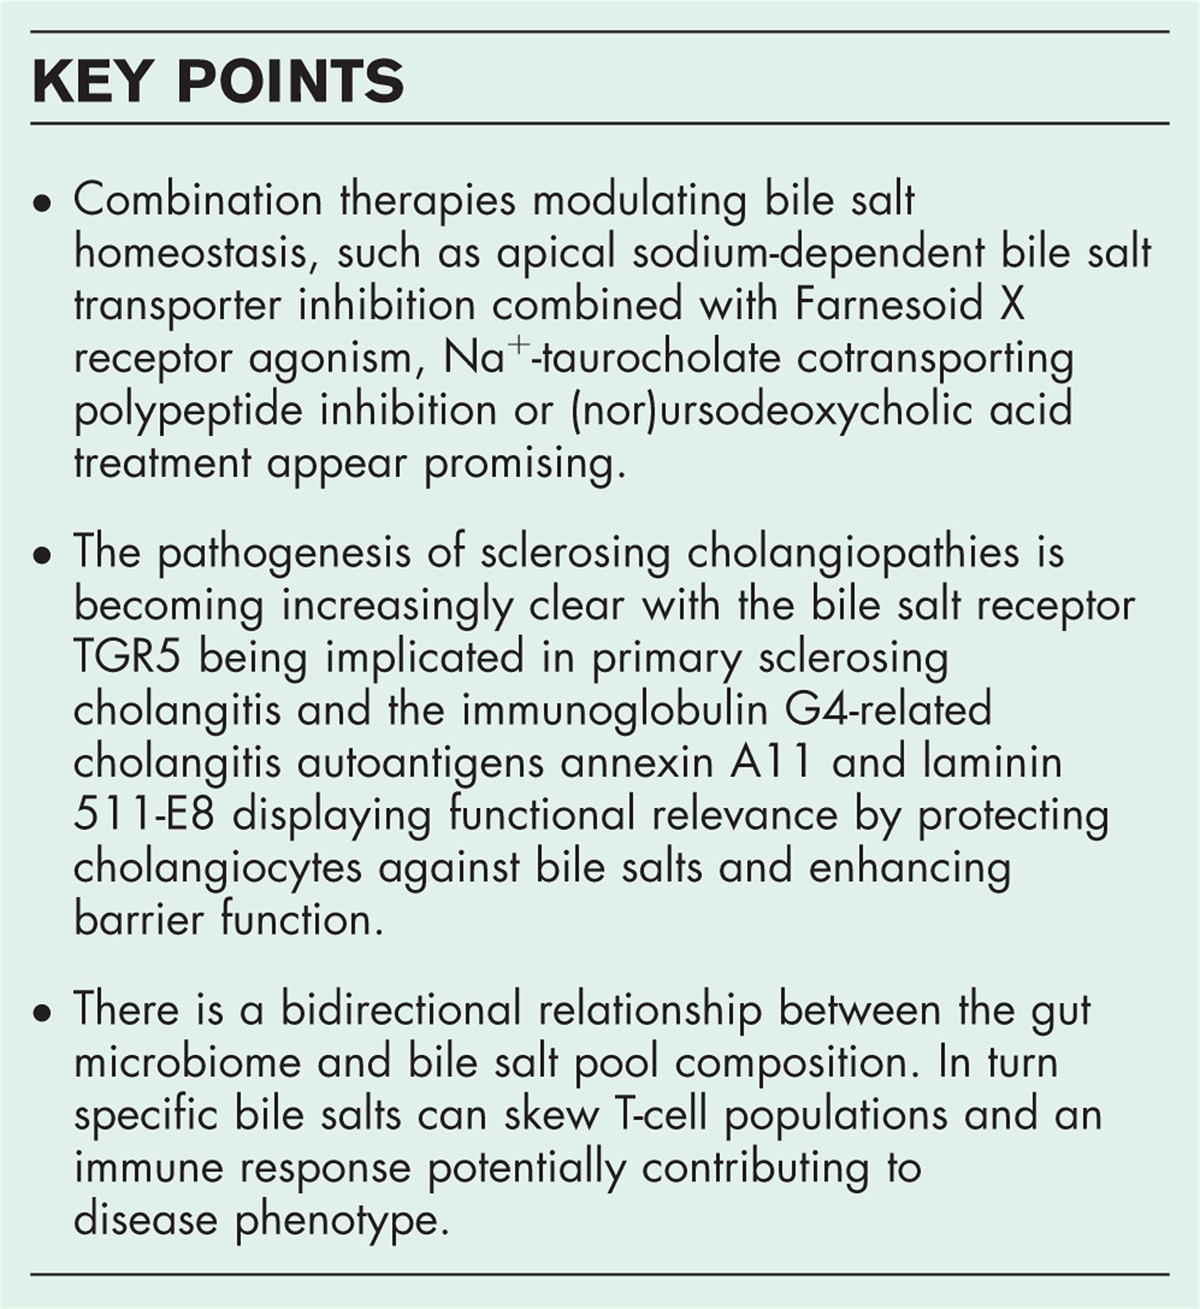 Targeting bile salt homeostasis in biliary diseases